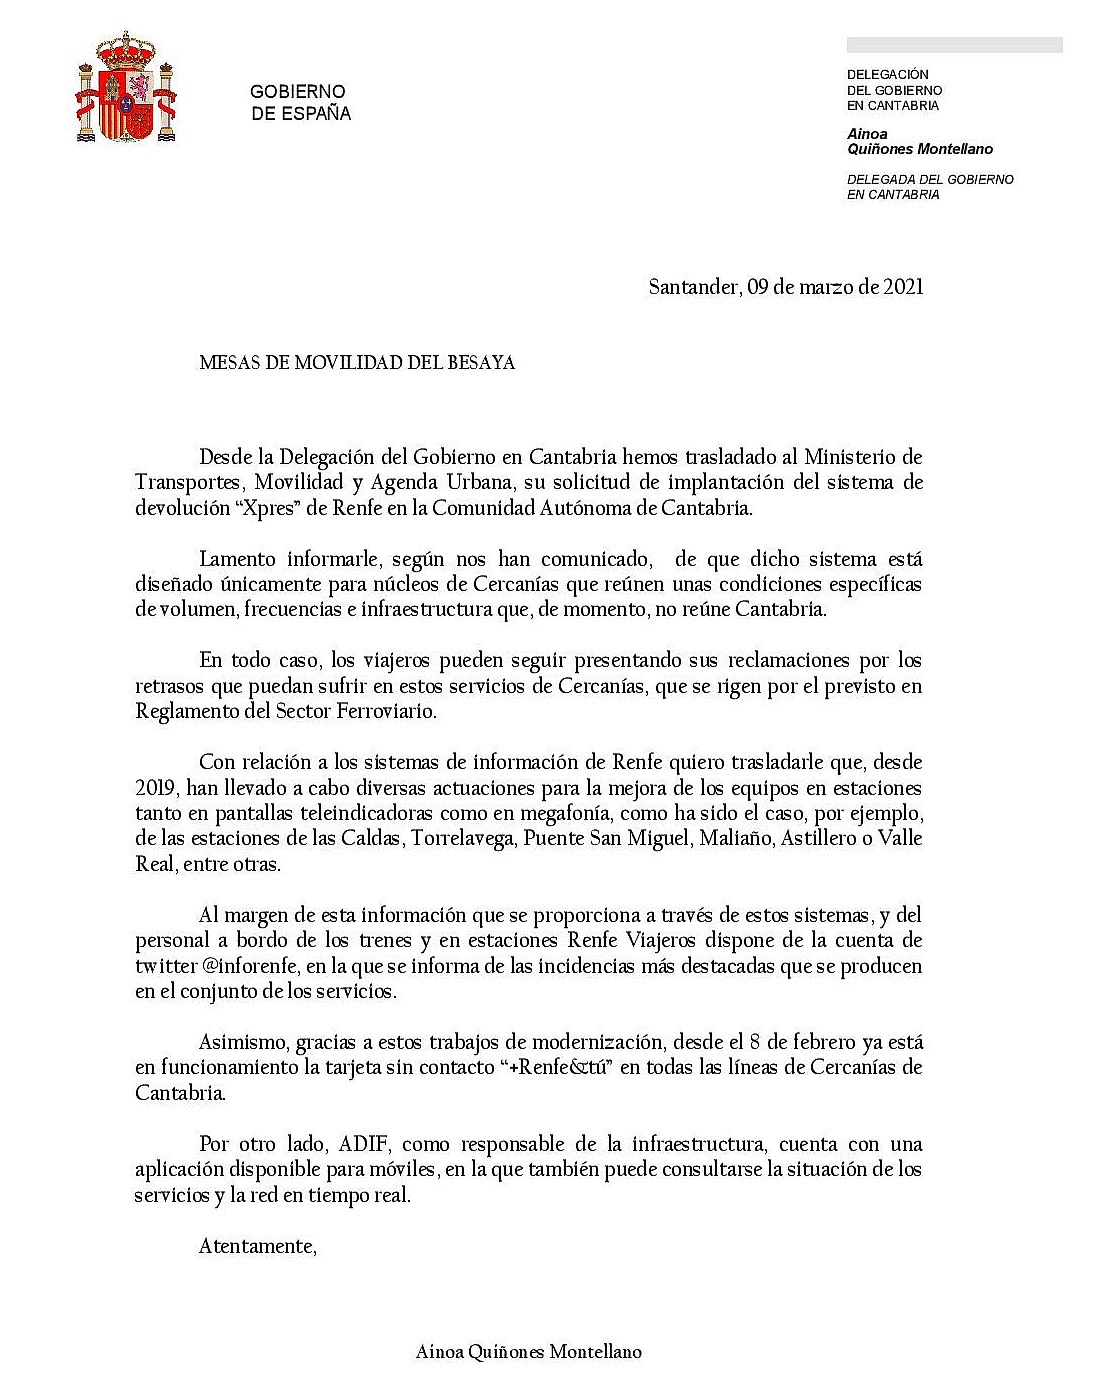  RENFE no implanta la ‘Devolución «Xpress» en Cantabria por no cumplir «condiciones de volumen, frecuencias e infraestructura»